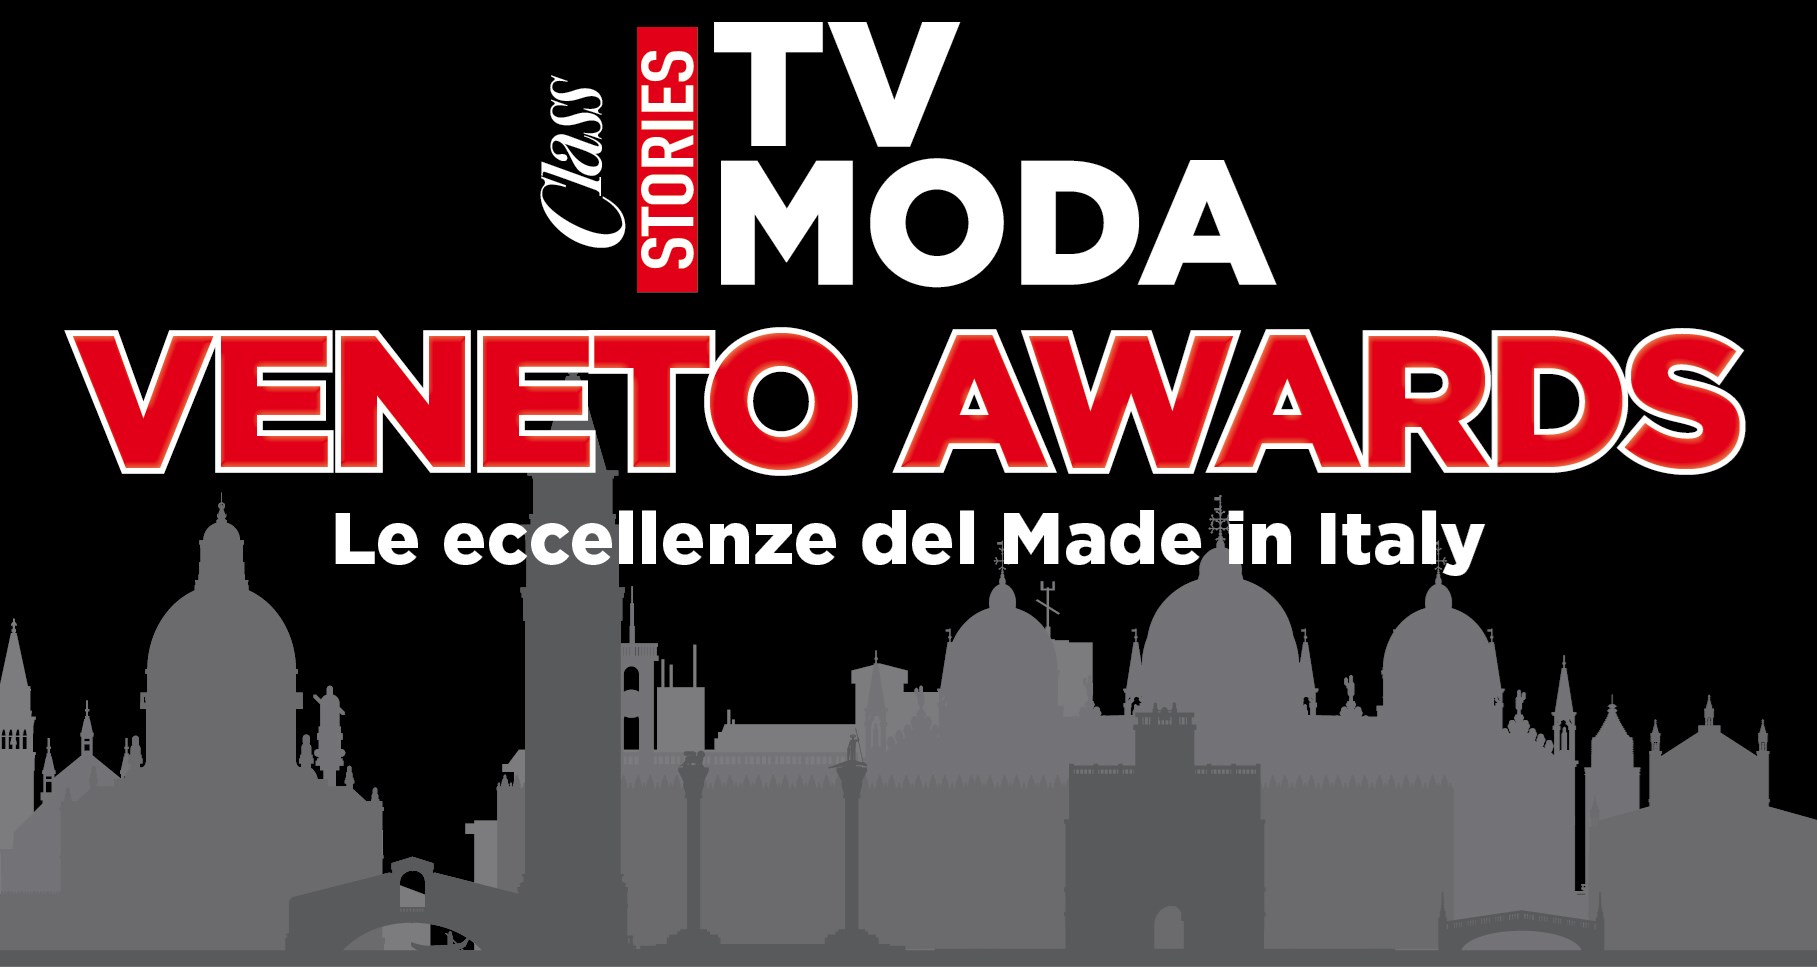 Class TV Moda Veneto Awards 2023